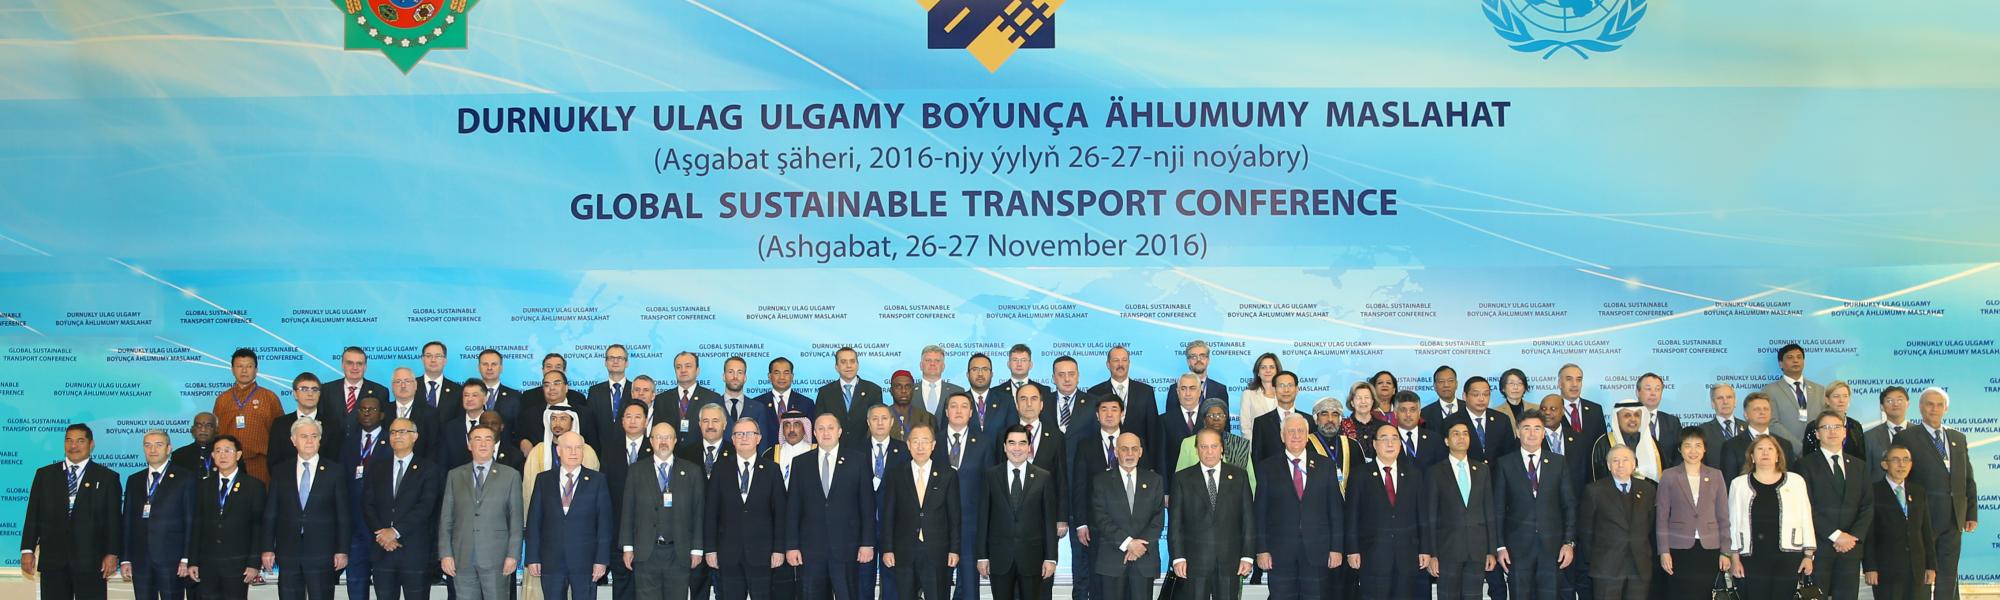 Ashgabat Conference sustainable transport summit group photo